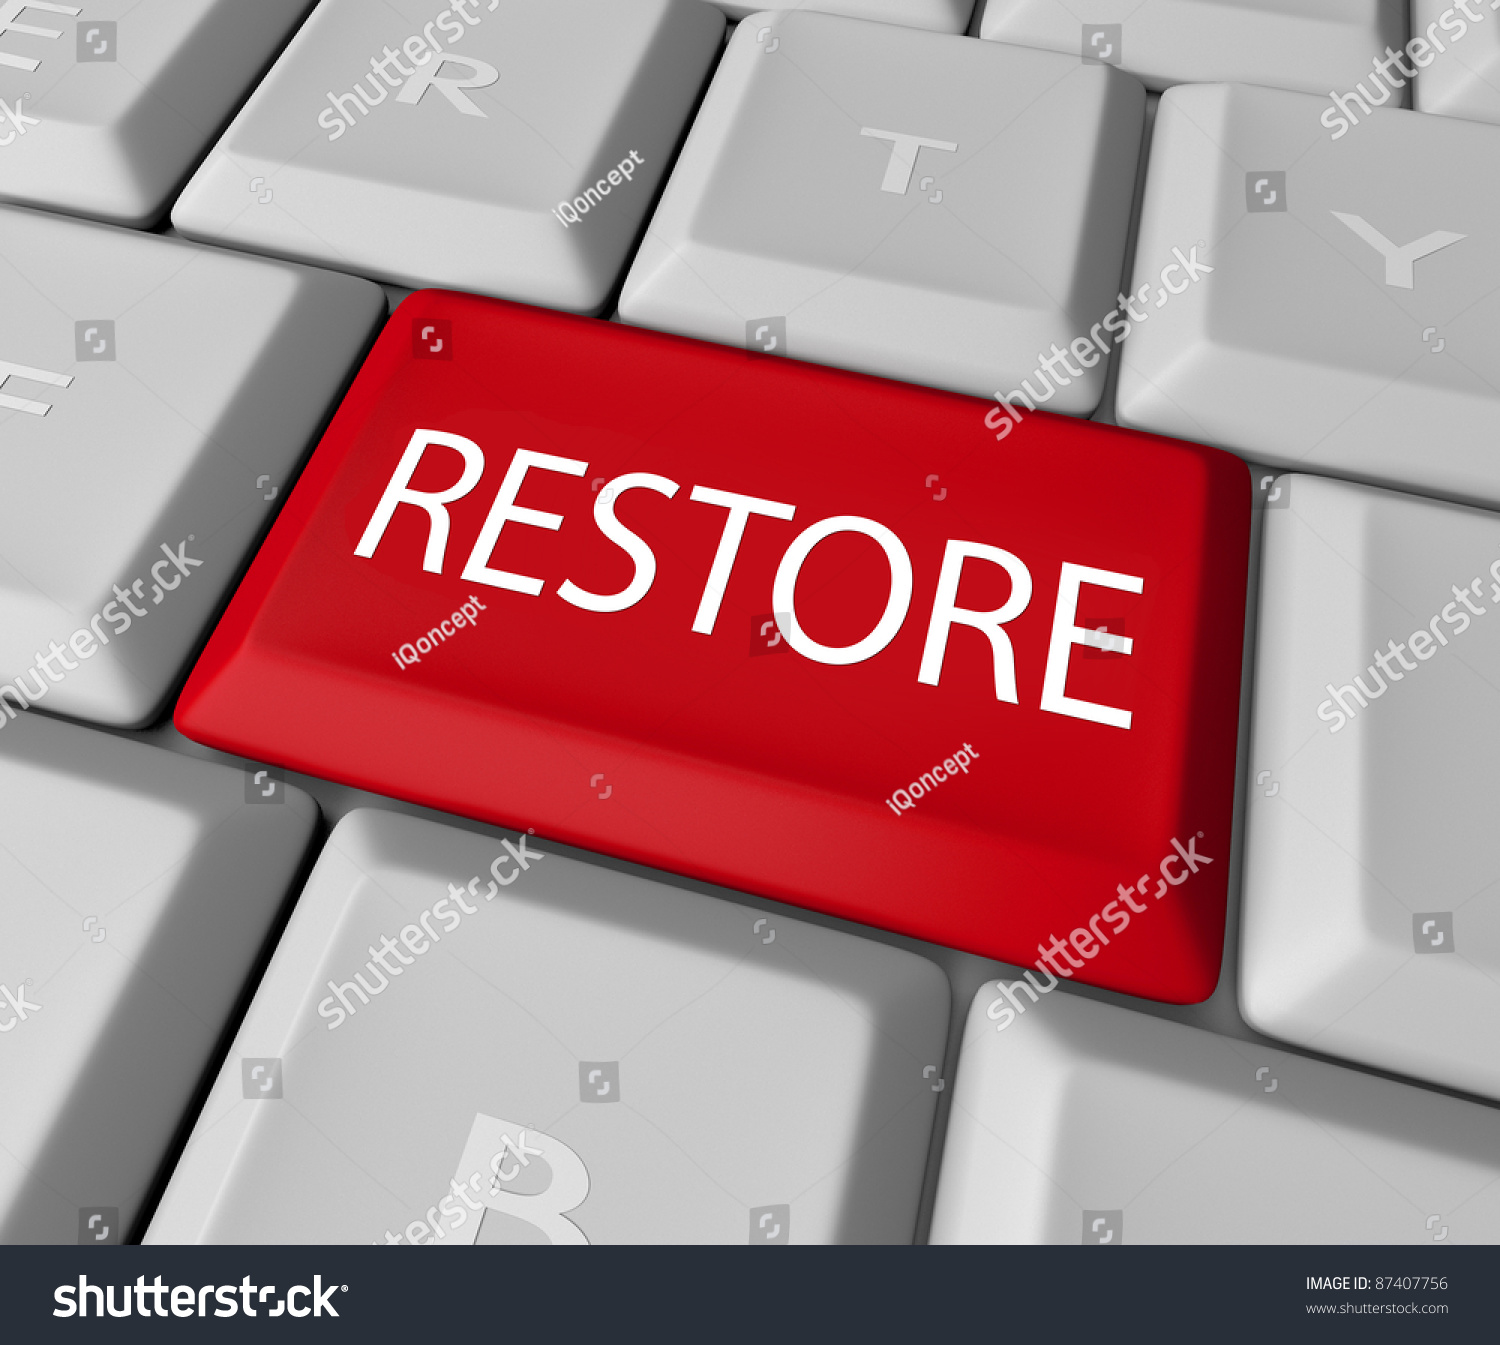 键盘红色键恢复这个词,代表过去需要返回值或